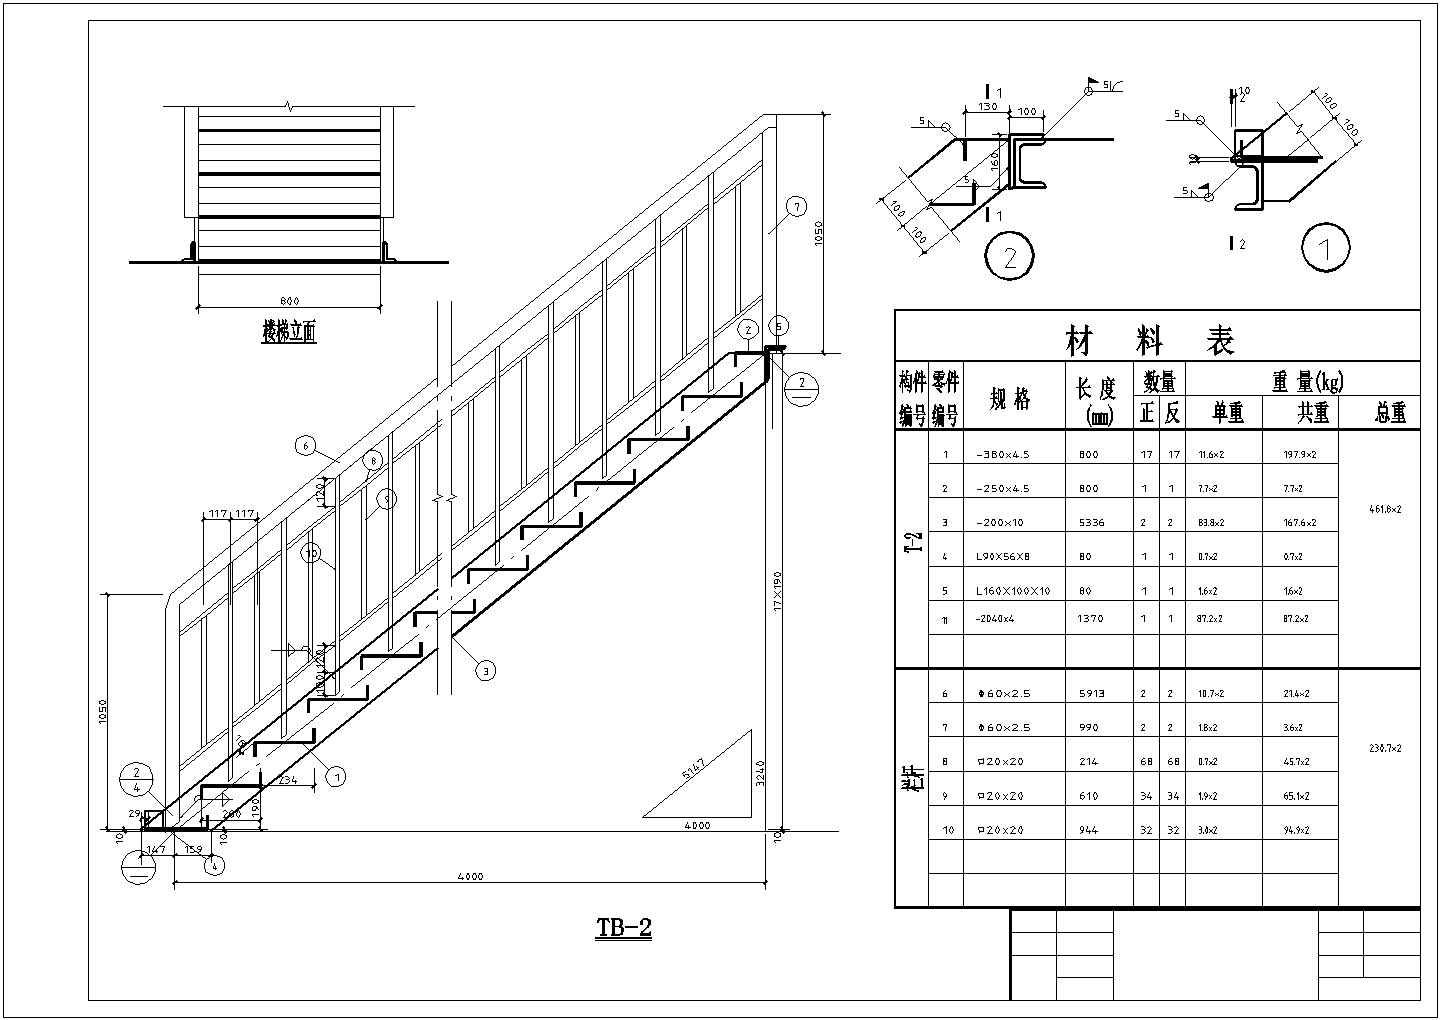 常见楼梯画法，楼梯扶手，踏板节点详图-室内CAD图块-筑龙室内设计论坛